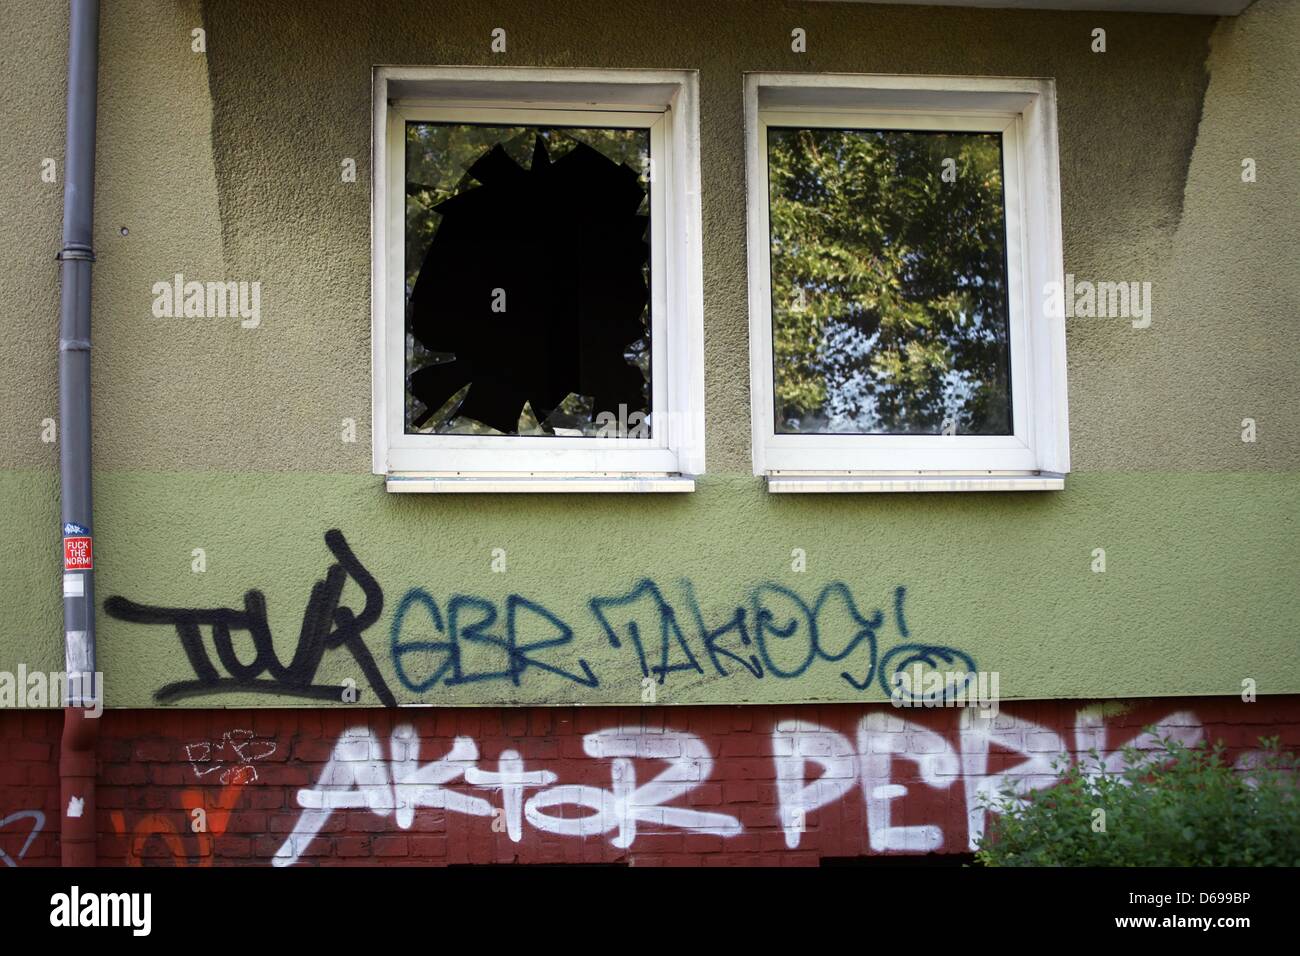 Ein zerbrochenes Fenster eines Mehrfamilienhauses ausgebrannt ist in Dortmund, Deutschland, 3. August 2012 abgebildet. Drei Kinder starben im Feuer. Polizeibeamten vermuten ein Kapitalverbrechen und Invesigate auf die trategie. Foto: Daniel Naupold Stockfoto